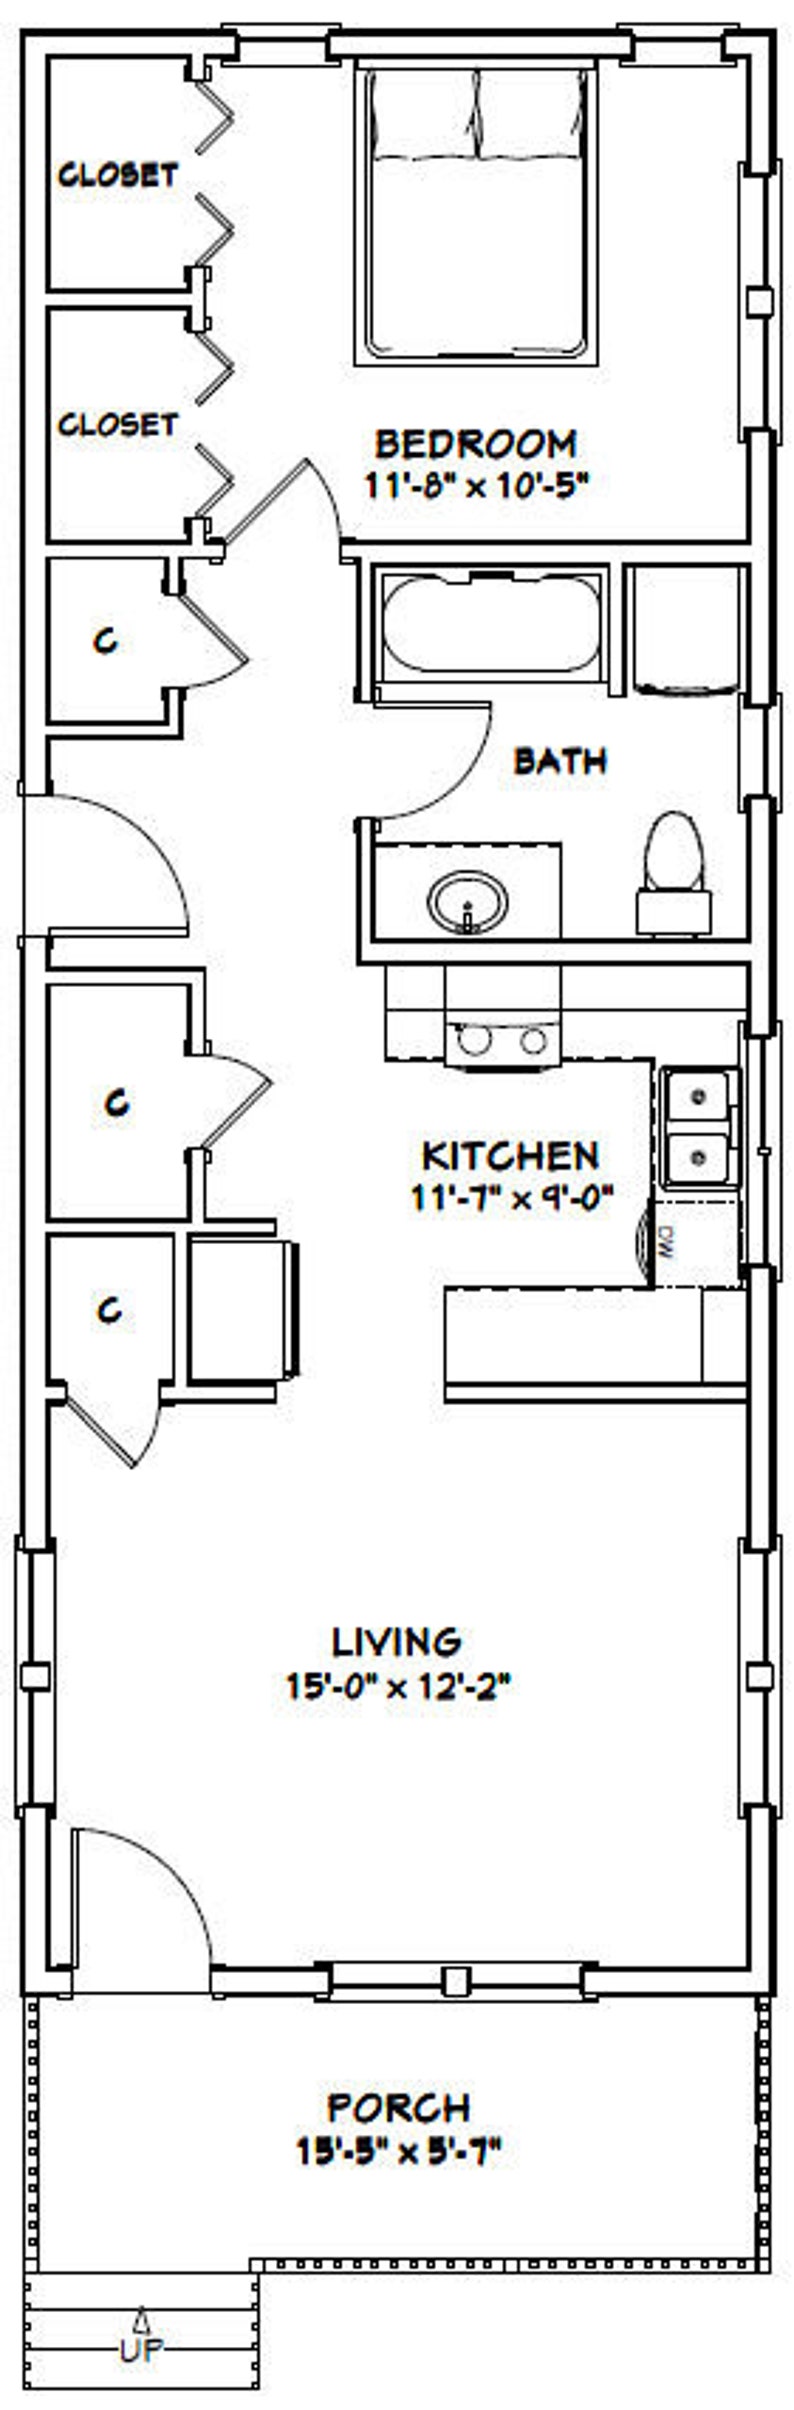 672 sq ft 16x42 House Instant Download PDF Floor Plan 1-Bedroom 1 ...